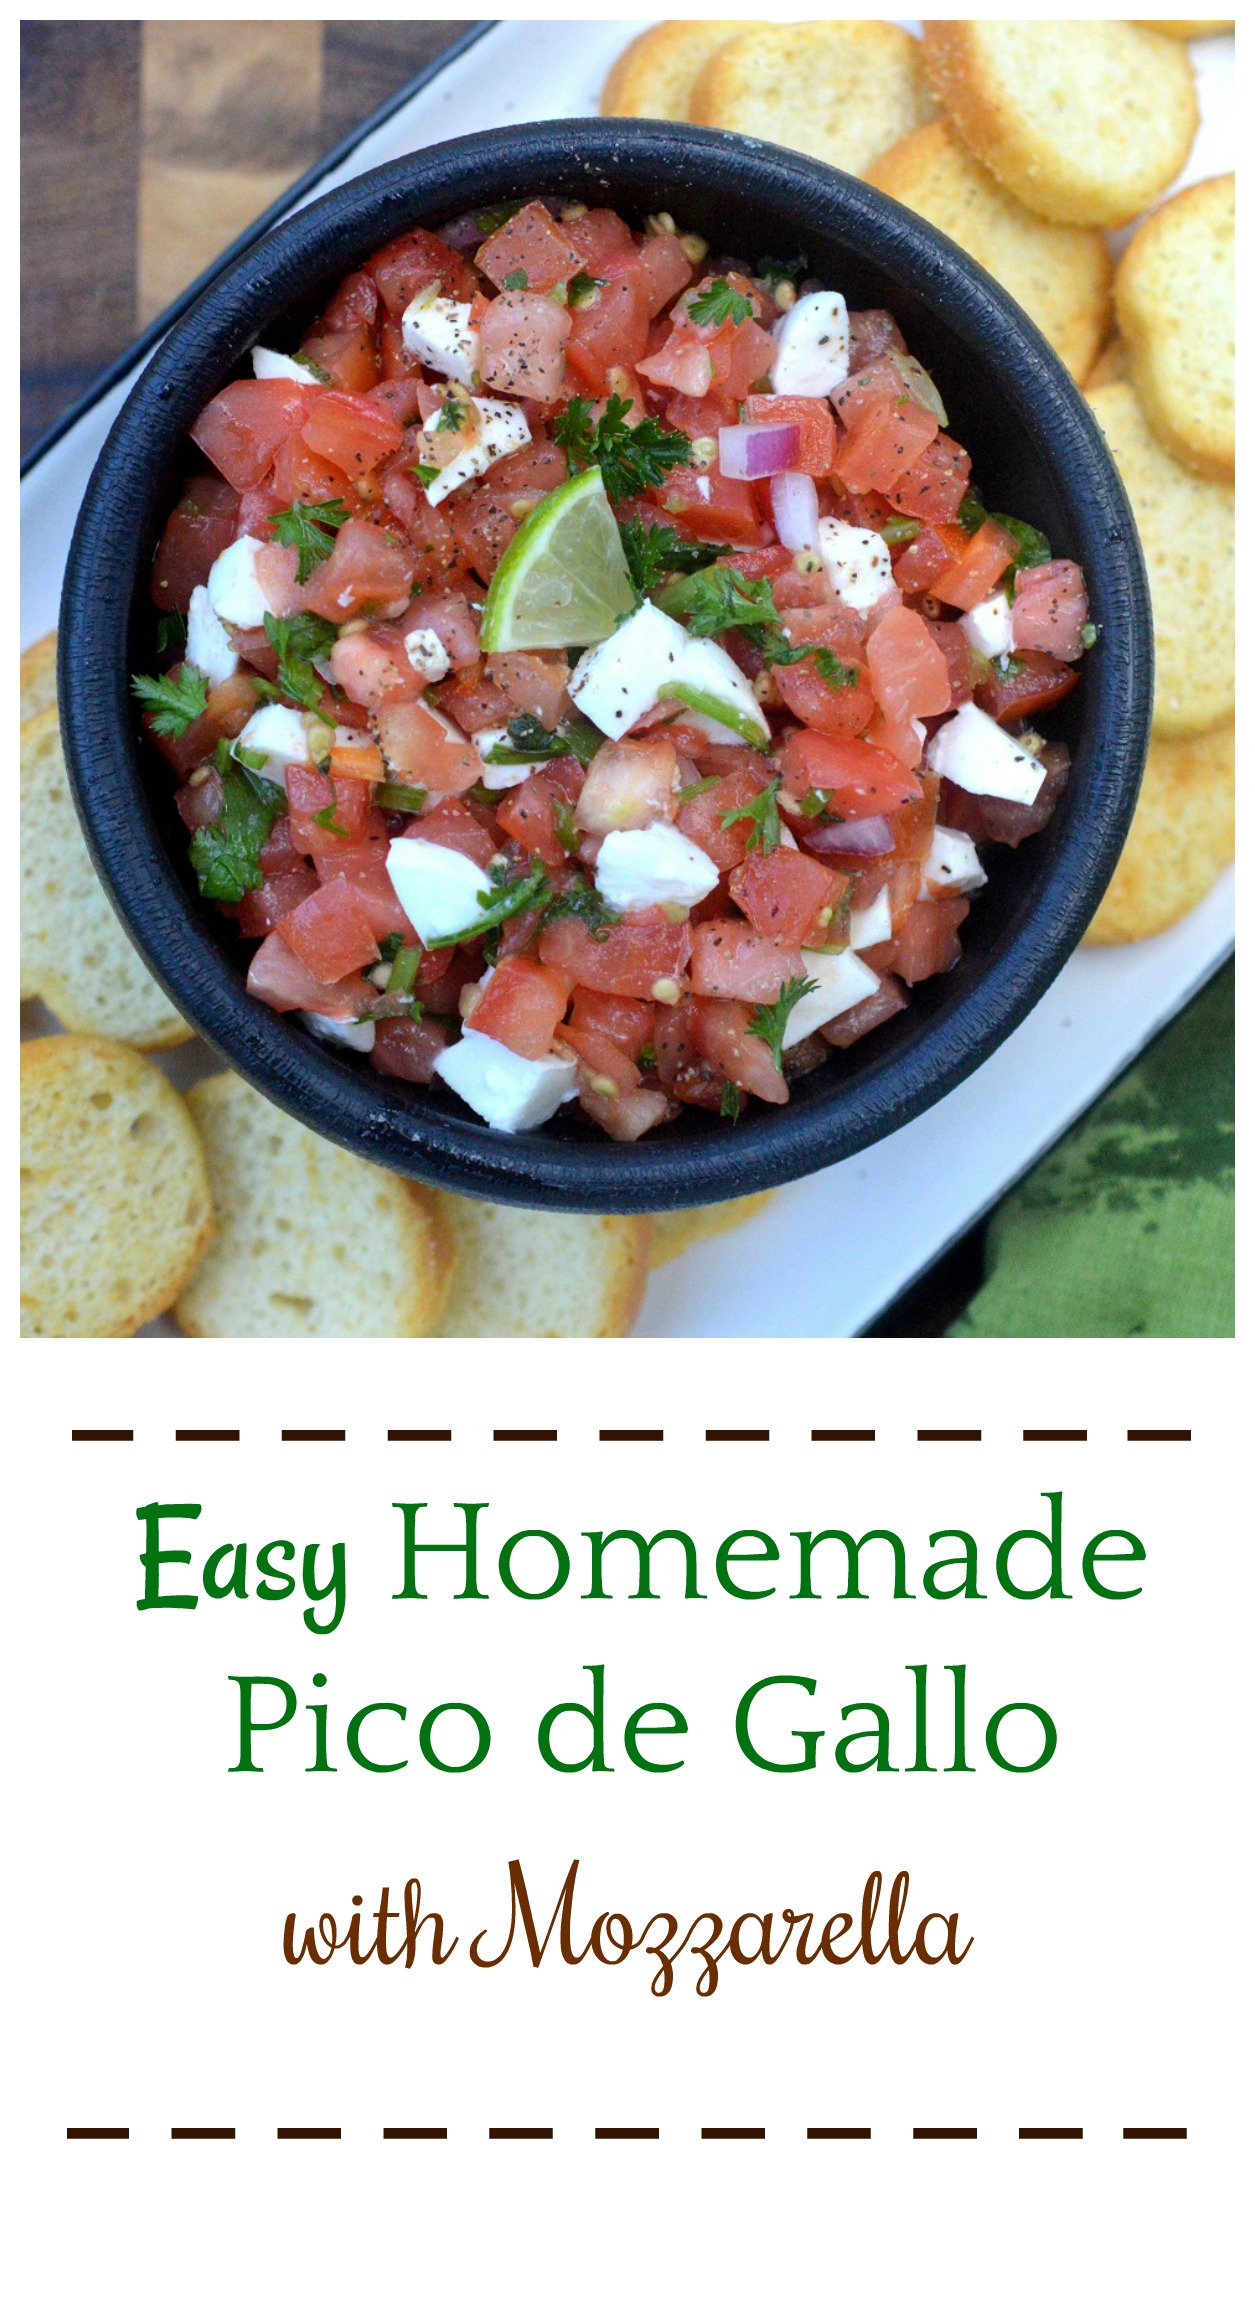 Easy Homemade Mozzarella Pico de Gallo